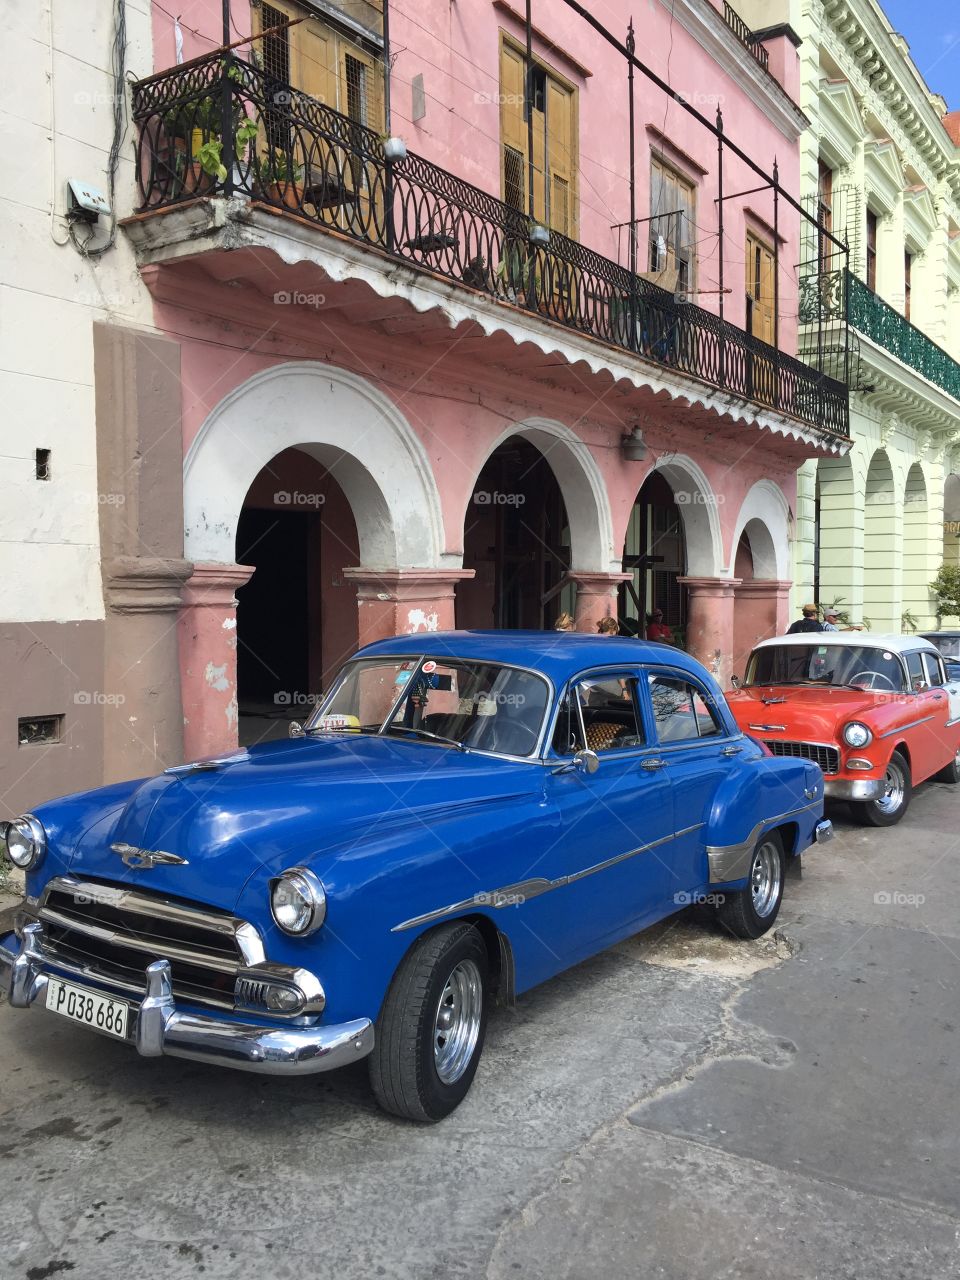 Car, Havana, Cuba, November 2016